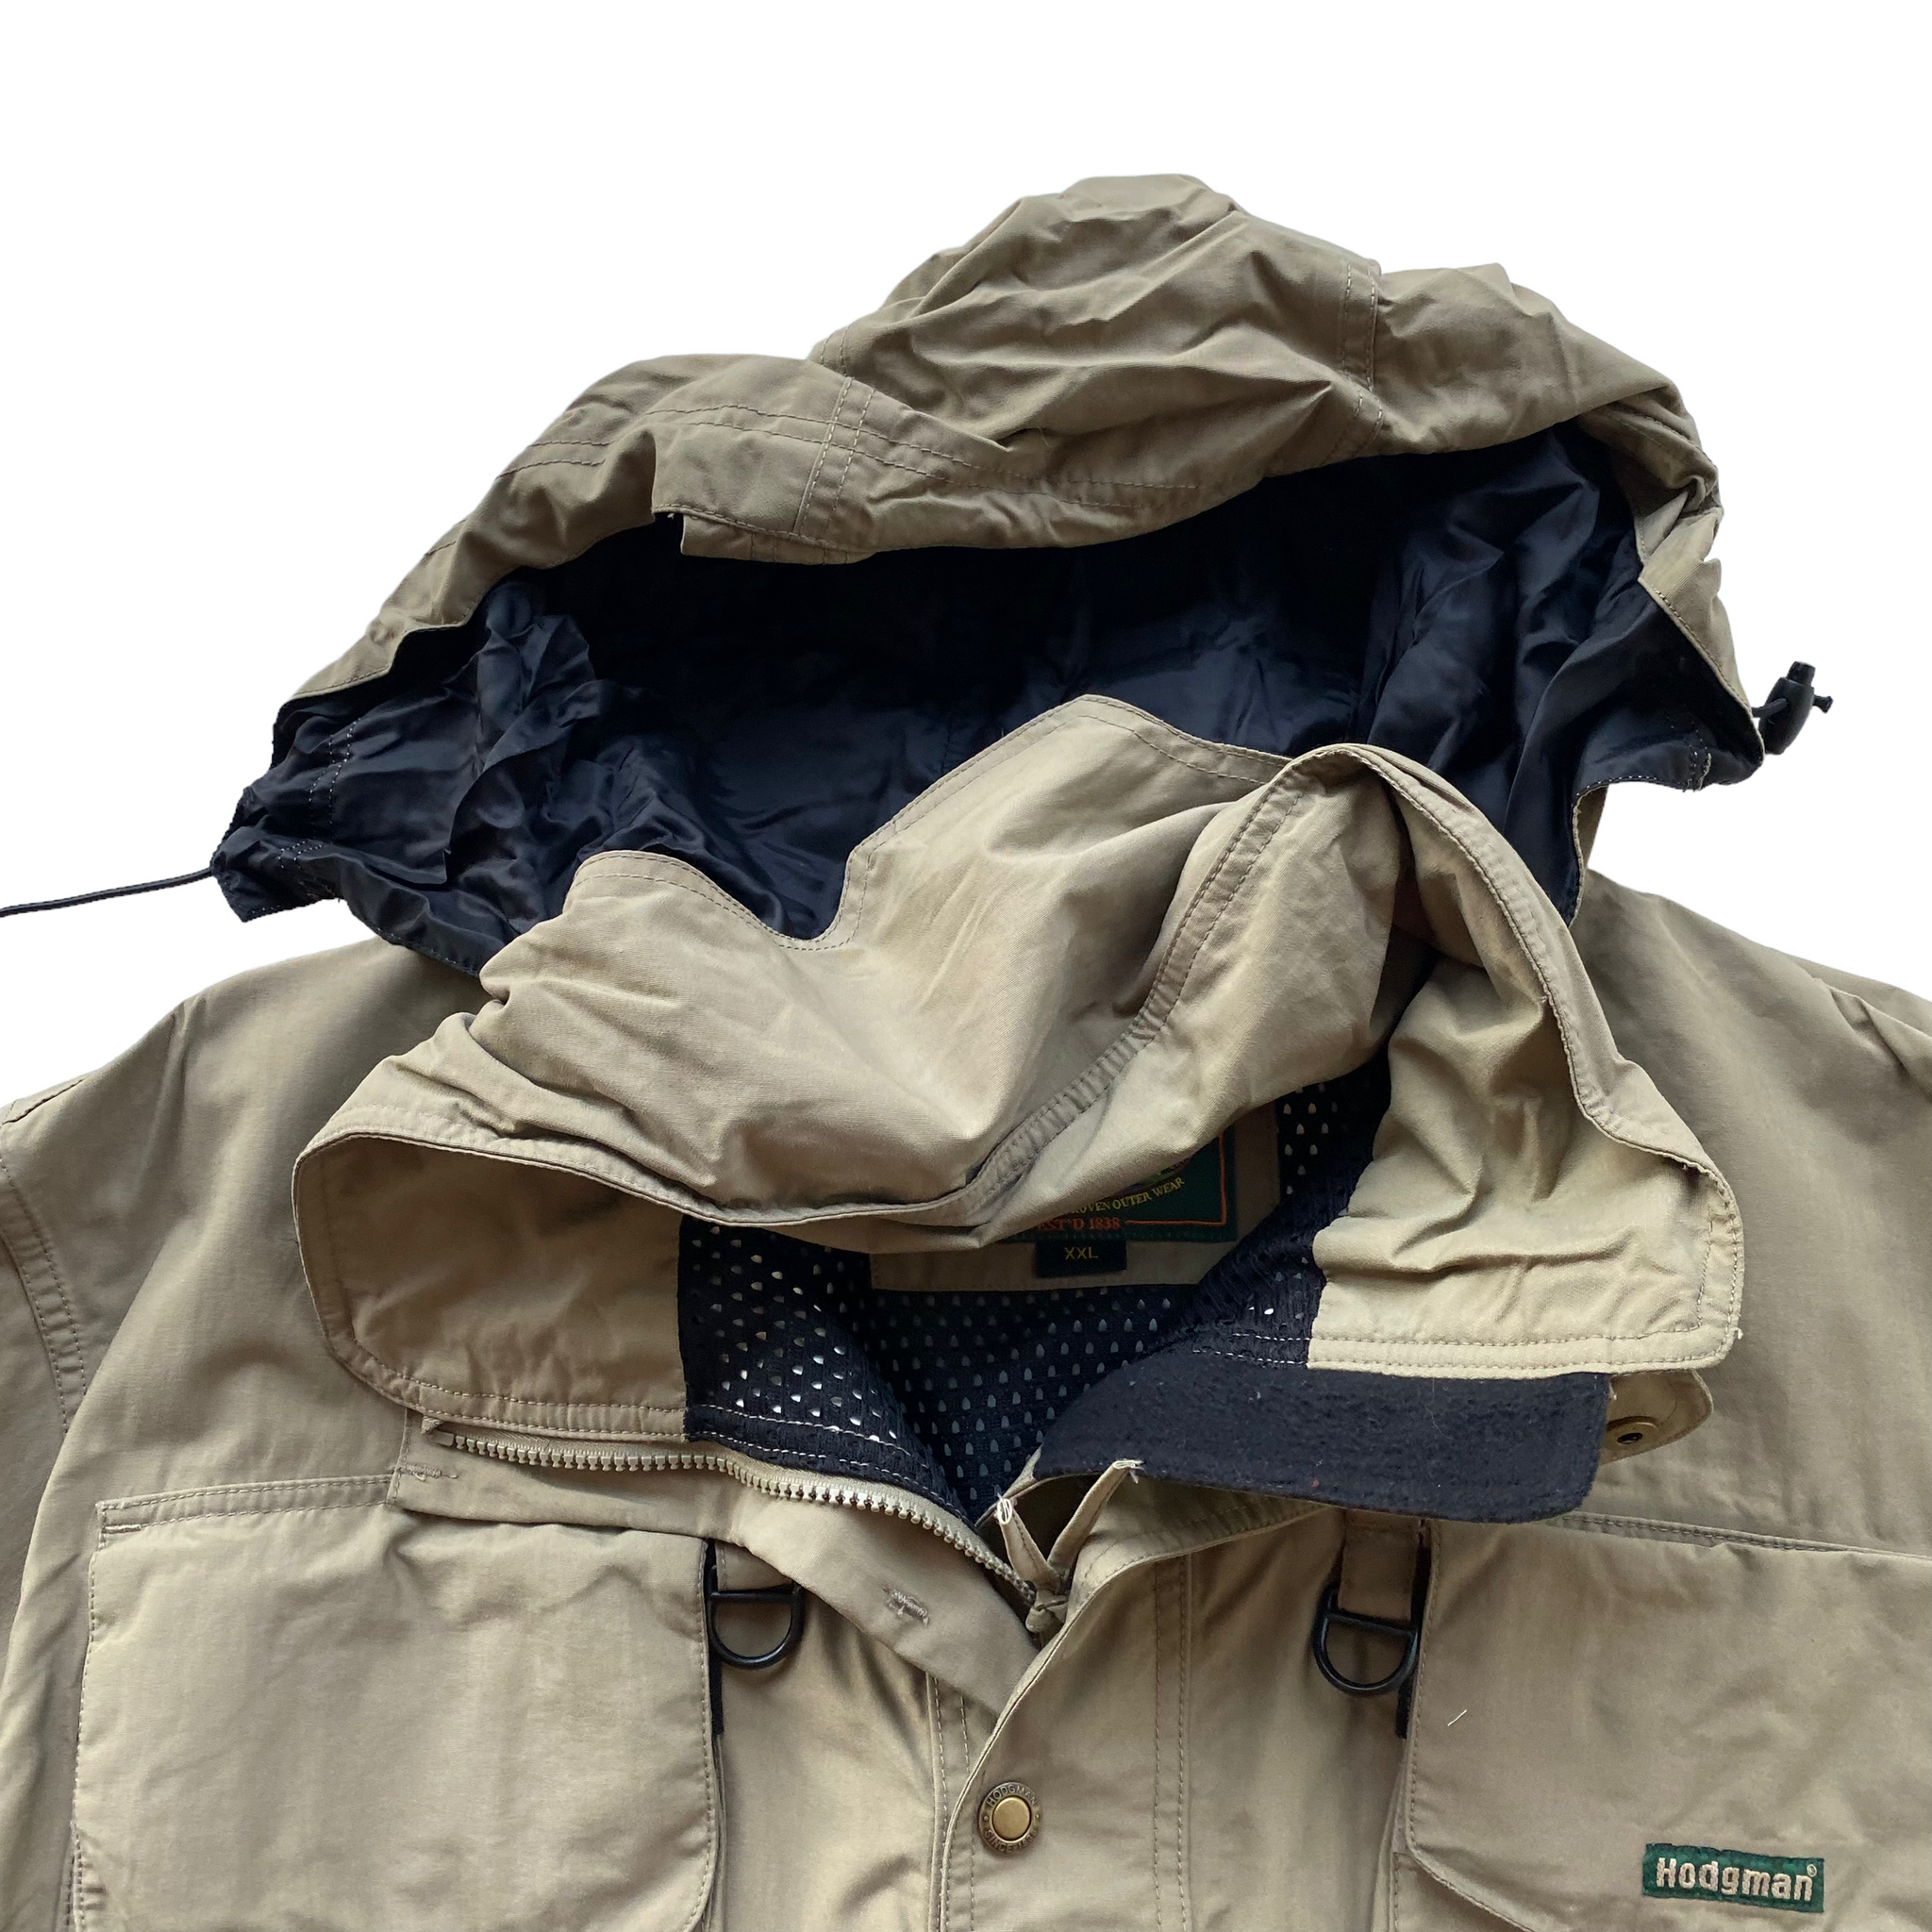 Hodgman fishing jacket. XXL